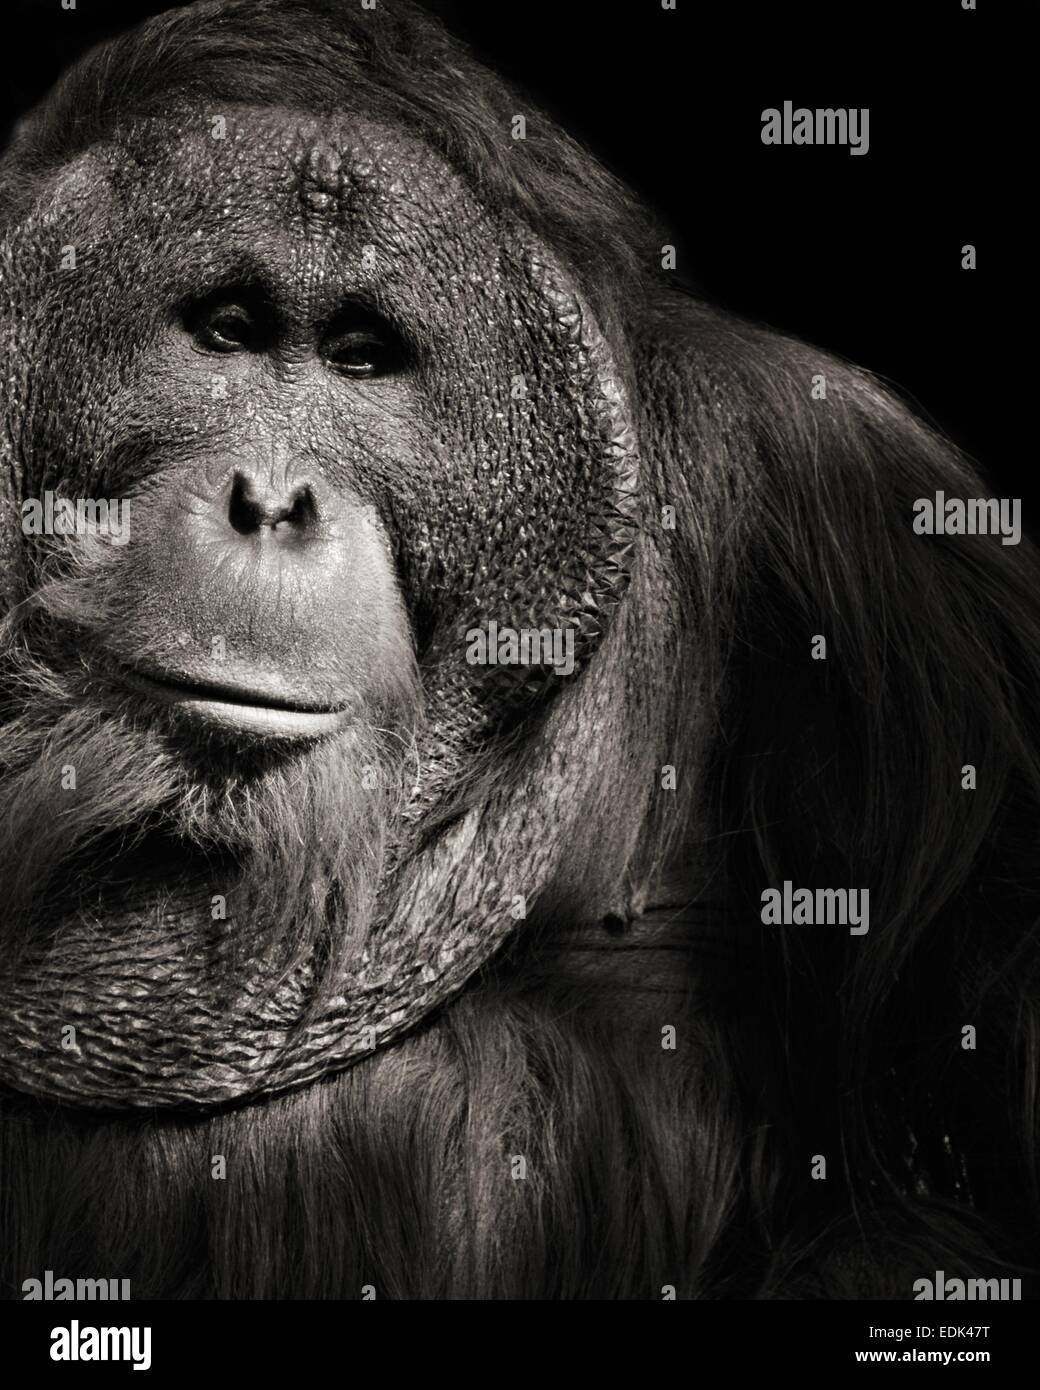 Porträt in schwarz und weiß von einer großen Orang-Utan ich freue mich, dass sehr gelehrig. Vom Aussterben bedrohte Tiere Stockfoto